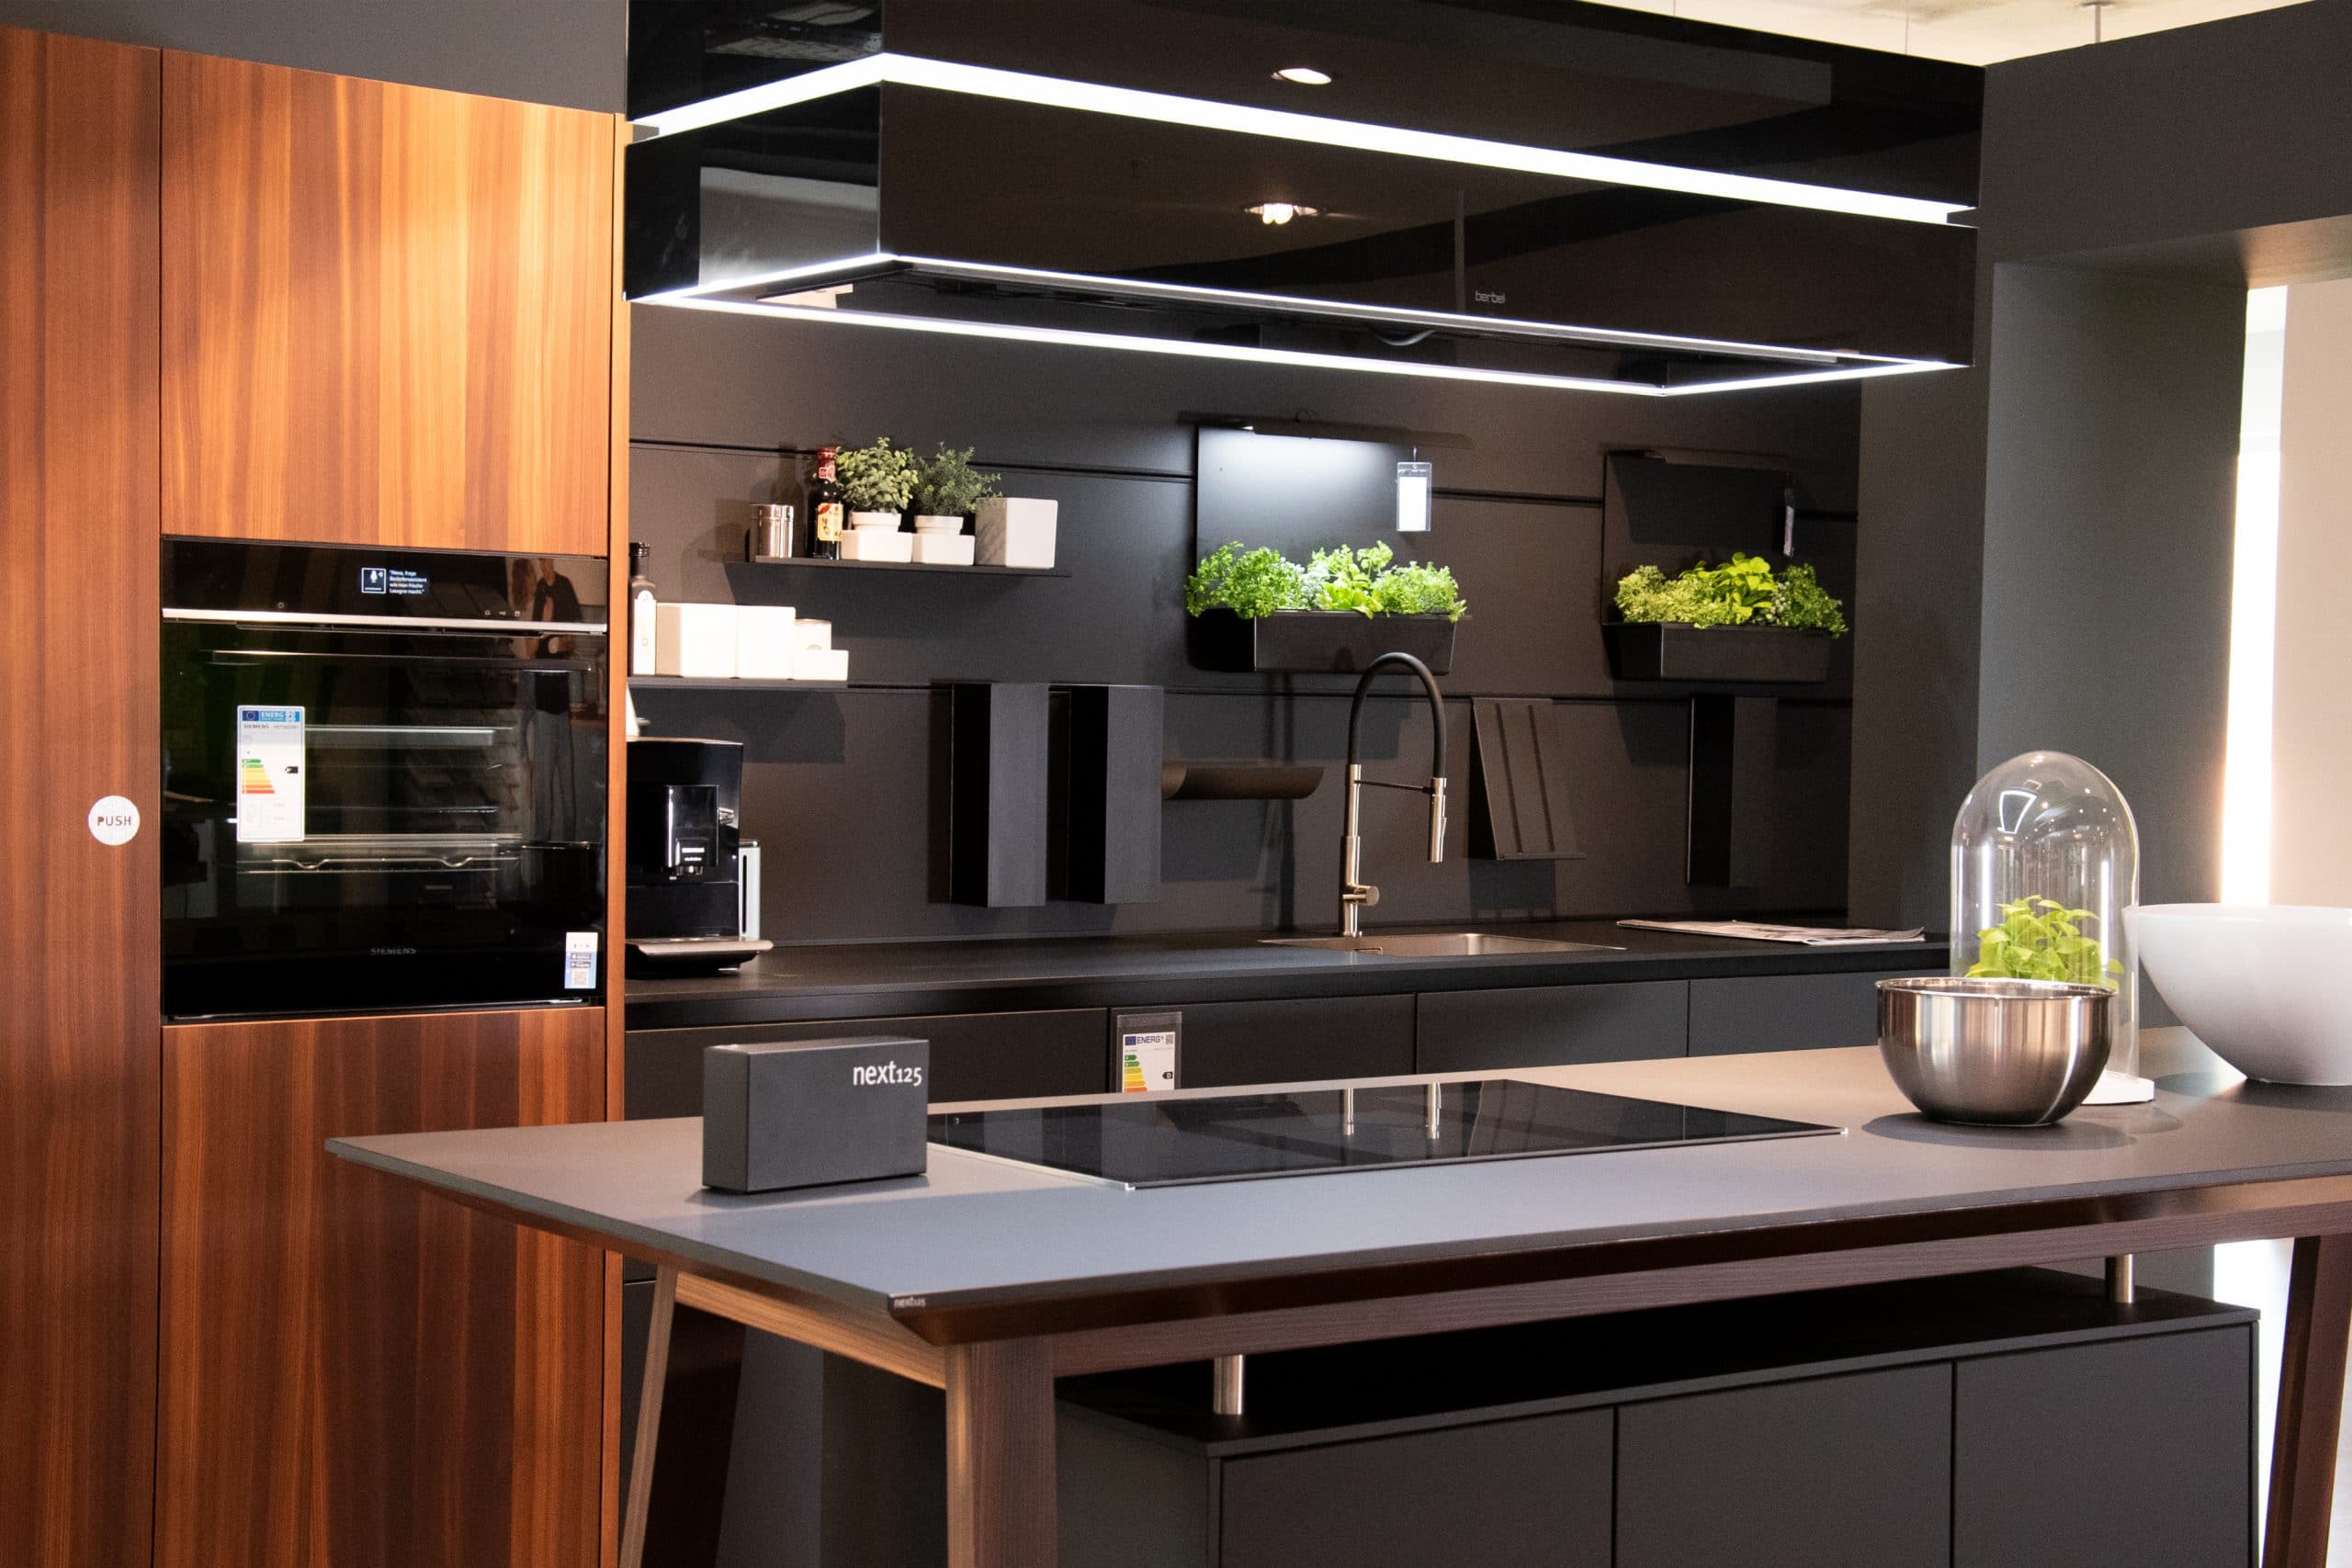 Elegante Einbauküche: NX 870 Front in Onyxschwarz feinmatt, harmonisch kombiniert mit Lärche geräuchert. Diese Küche vereint modernes Design mit natürlicher Wärme. Mit individuellen Anpassungsmöglichkeiten an Ihre Räumlichkeiten wird diese Küche zum Herzstück Ihres Zuhauses. Entdecken Sie zeitlose Schönheit und Funktionalität in einer Einbauküche, die Ihre Bedürfnisse erfüllt.